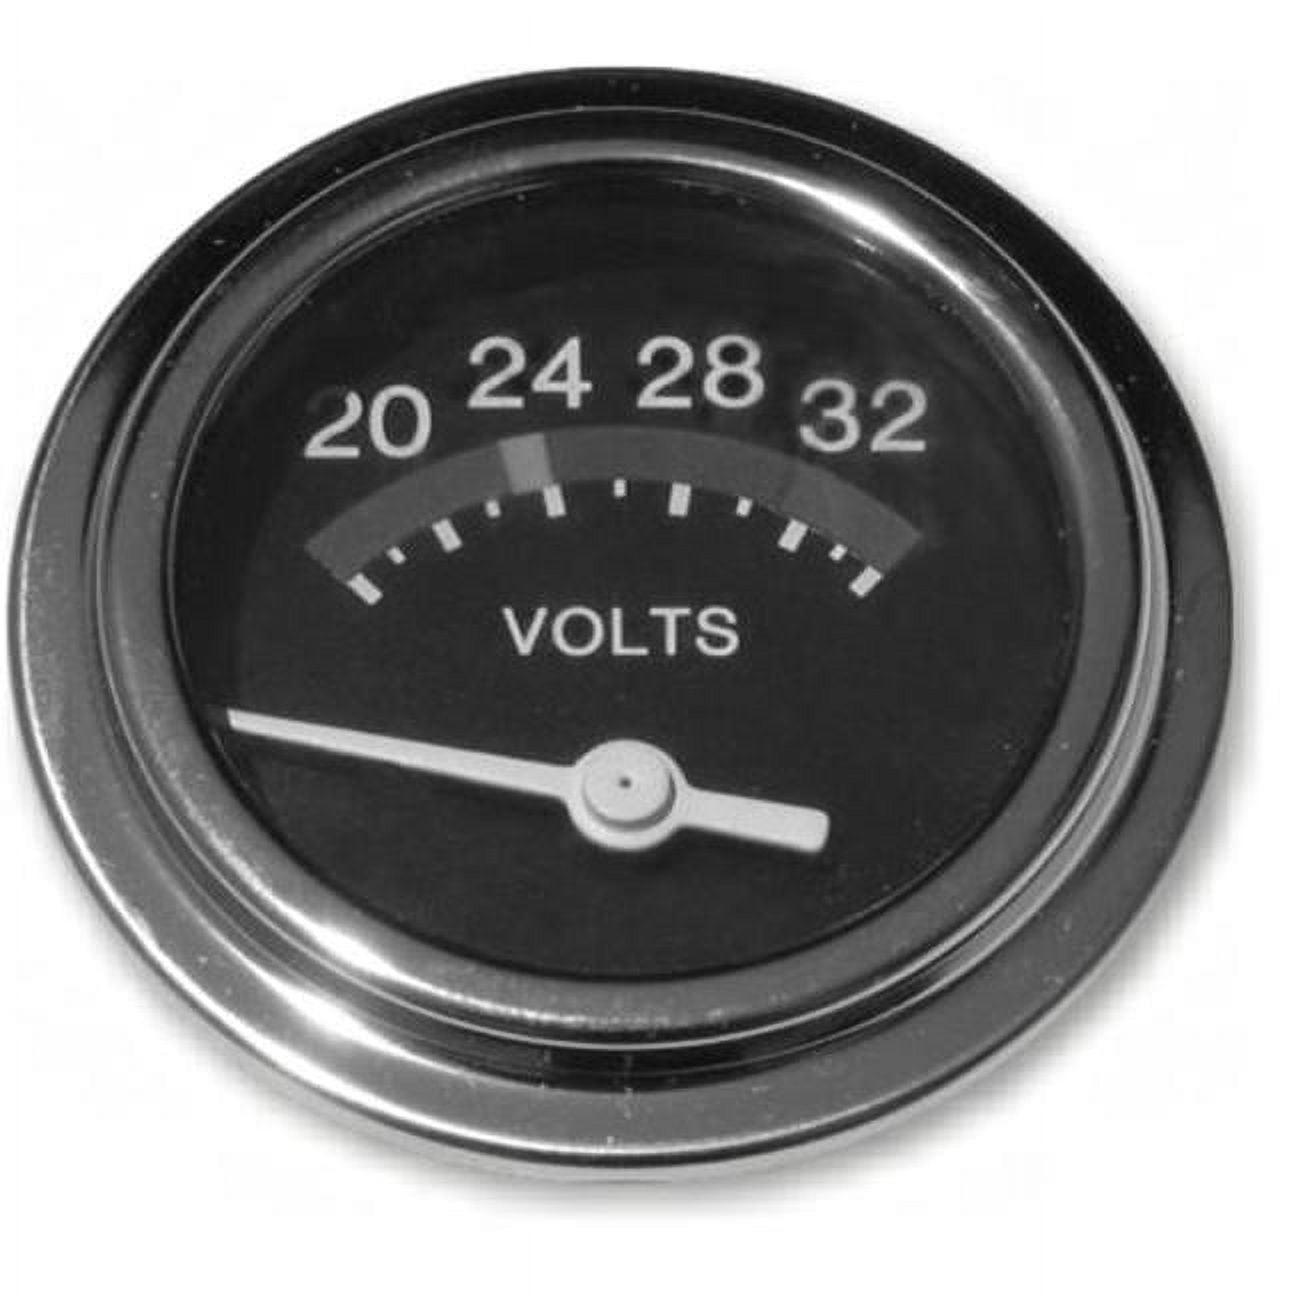 Picture of 24 Volt Dc Voltmeter - 20-32 Volts (4X4 Vehicles)